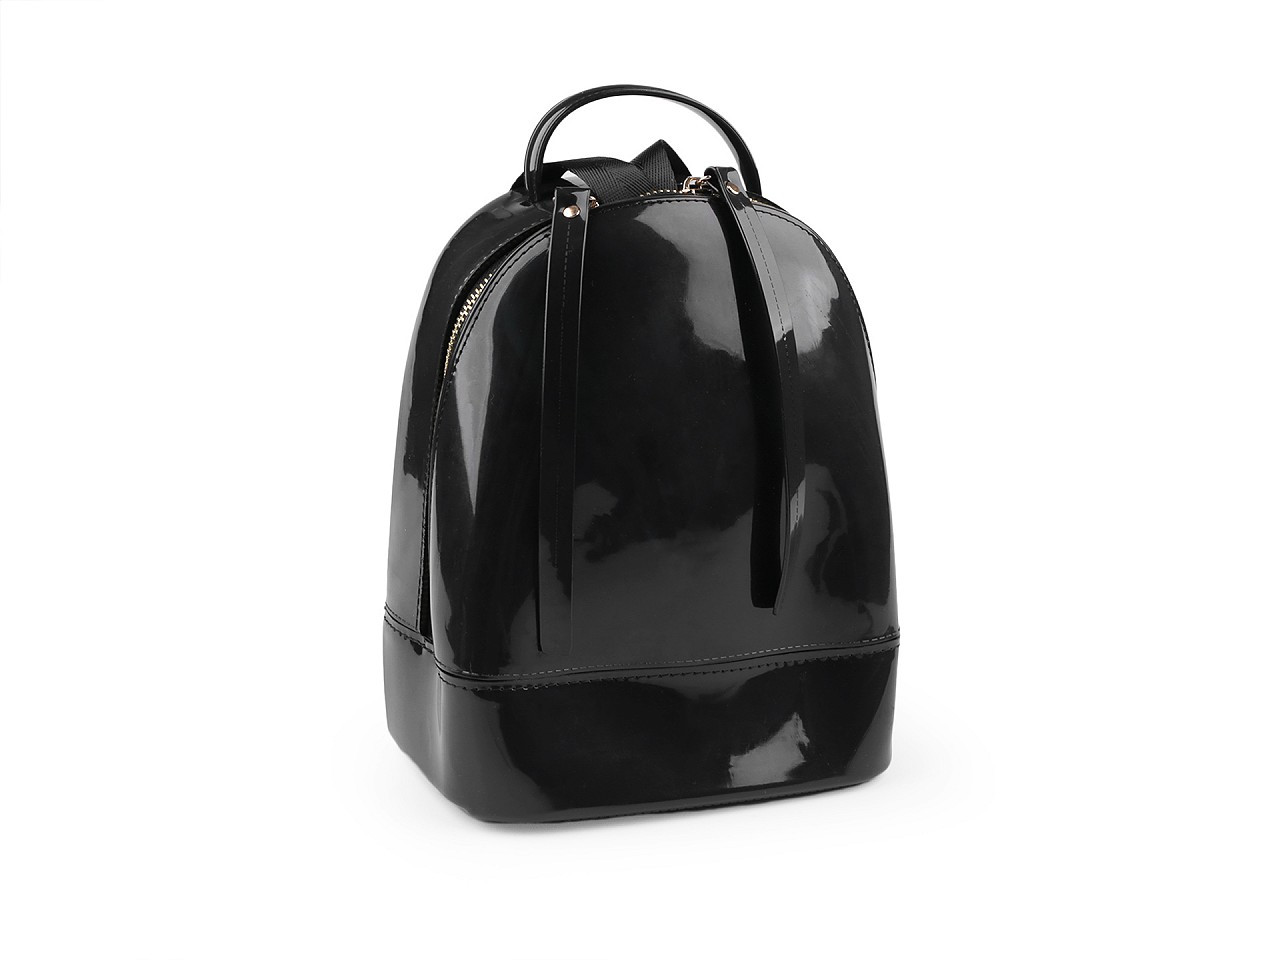 Dámský / dívčí batoh / crossbody kabelka 20x22 cm, barva 2 černá